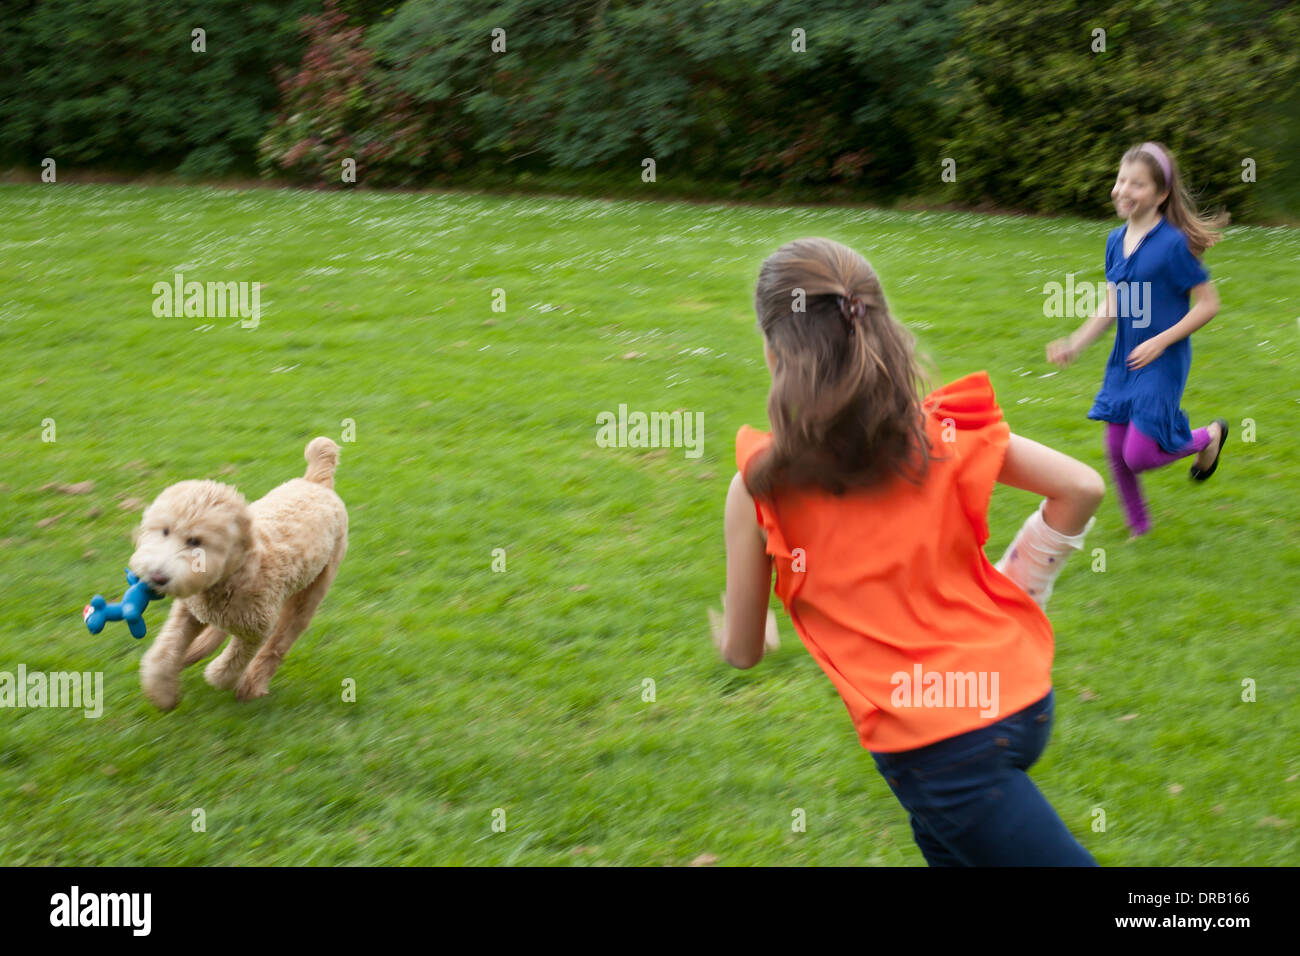 Les filles jouant avec le chien sur la pelouse Banque D'Images